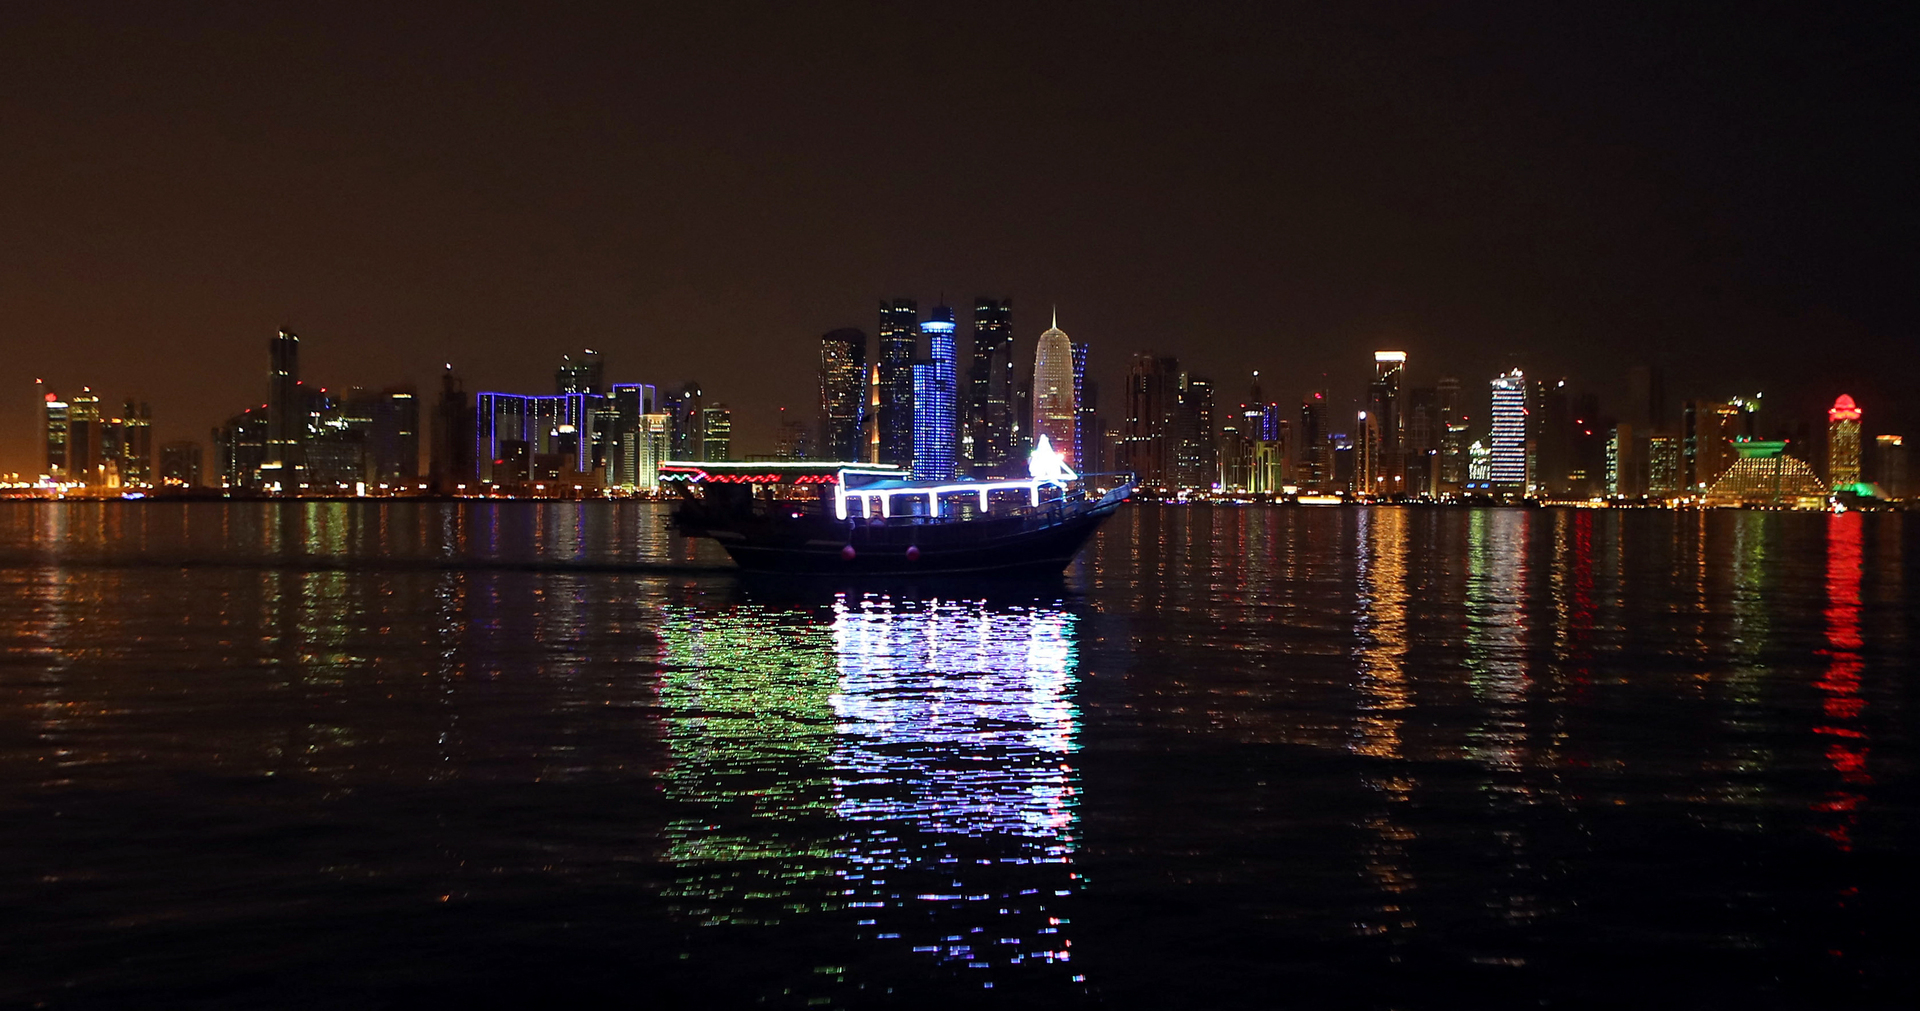 قطر تتربع على عرش الدول العربية بالابتكار والتنوع الاقتصادي